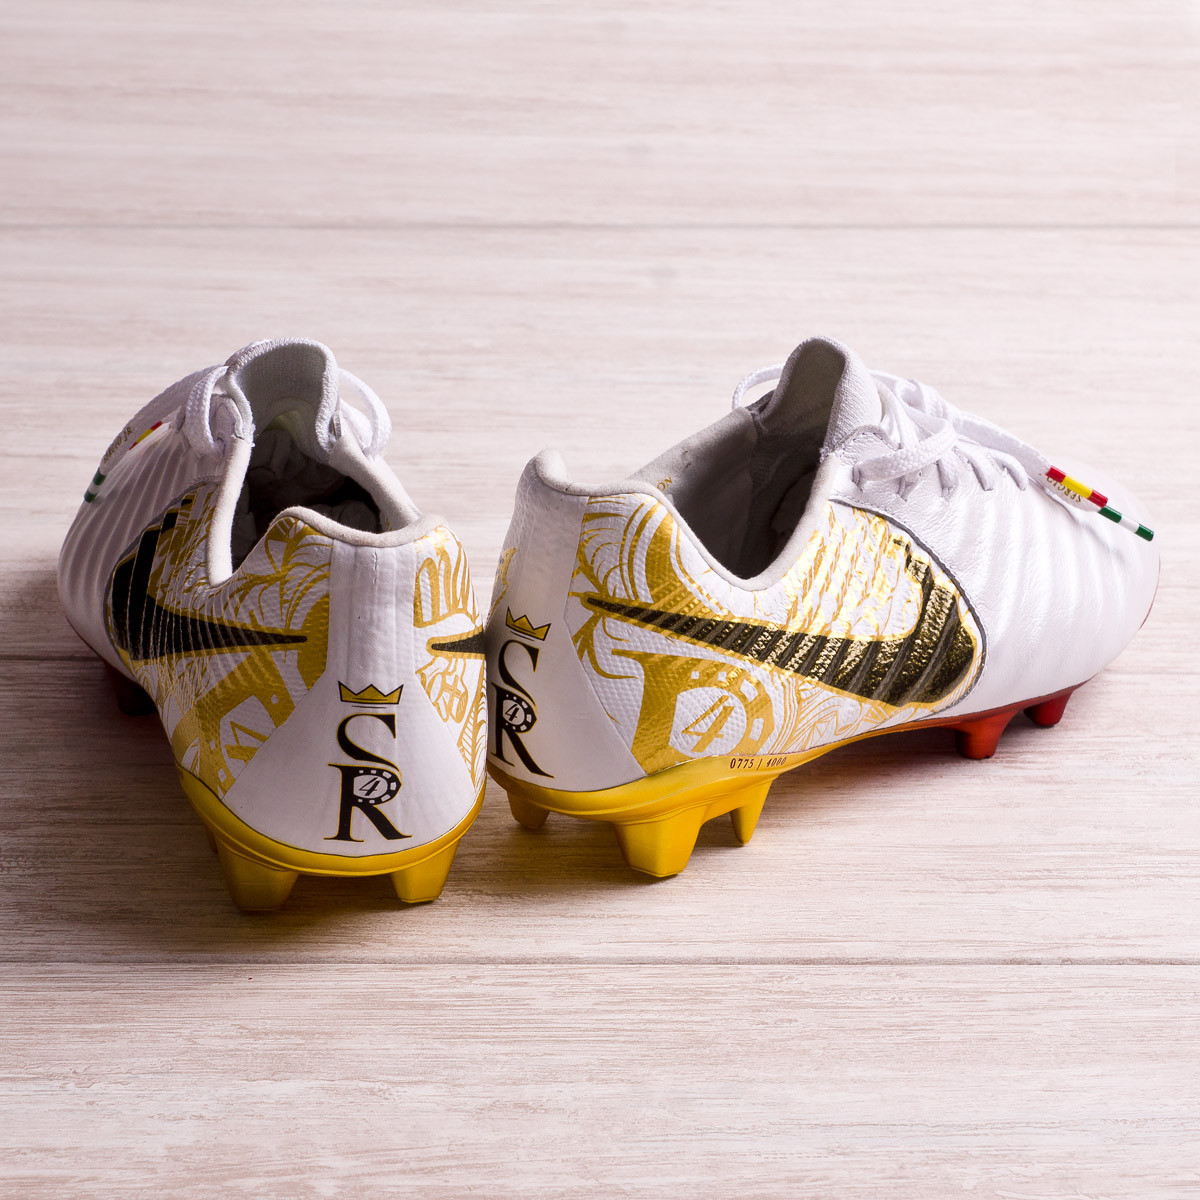 origen a menudo Colgar El capitán Sergio Ramos recibe botas exclusivas - Blogs - Fútbol Emotion